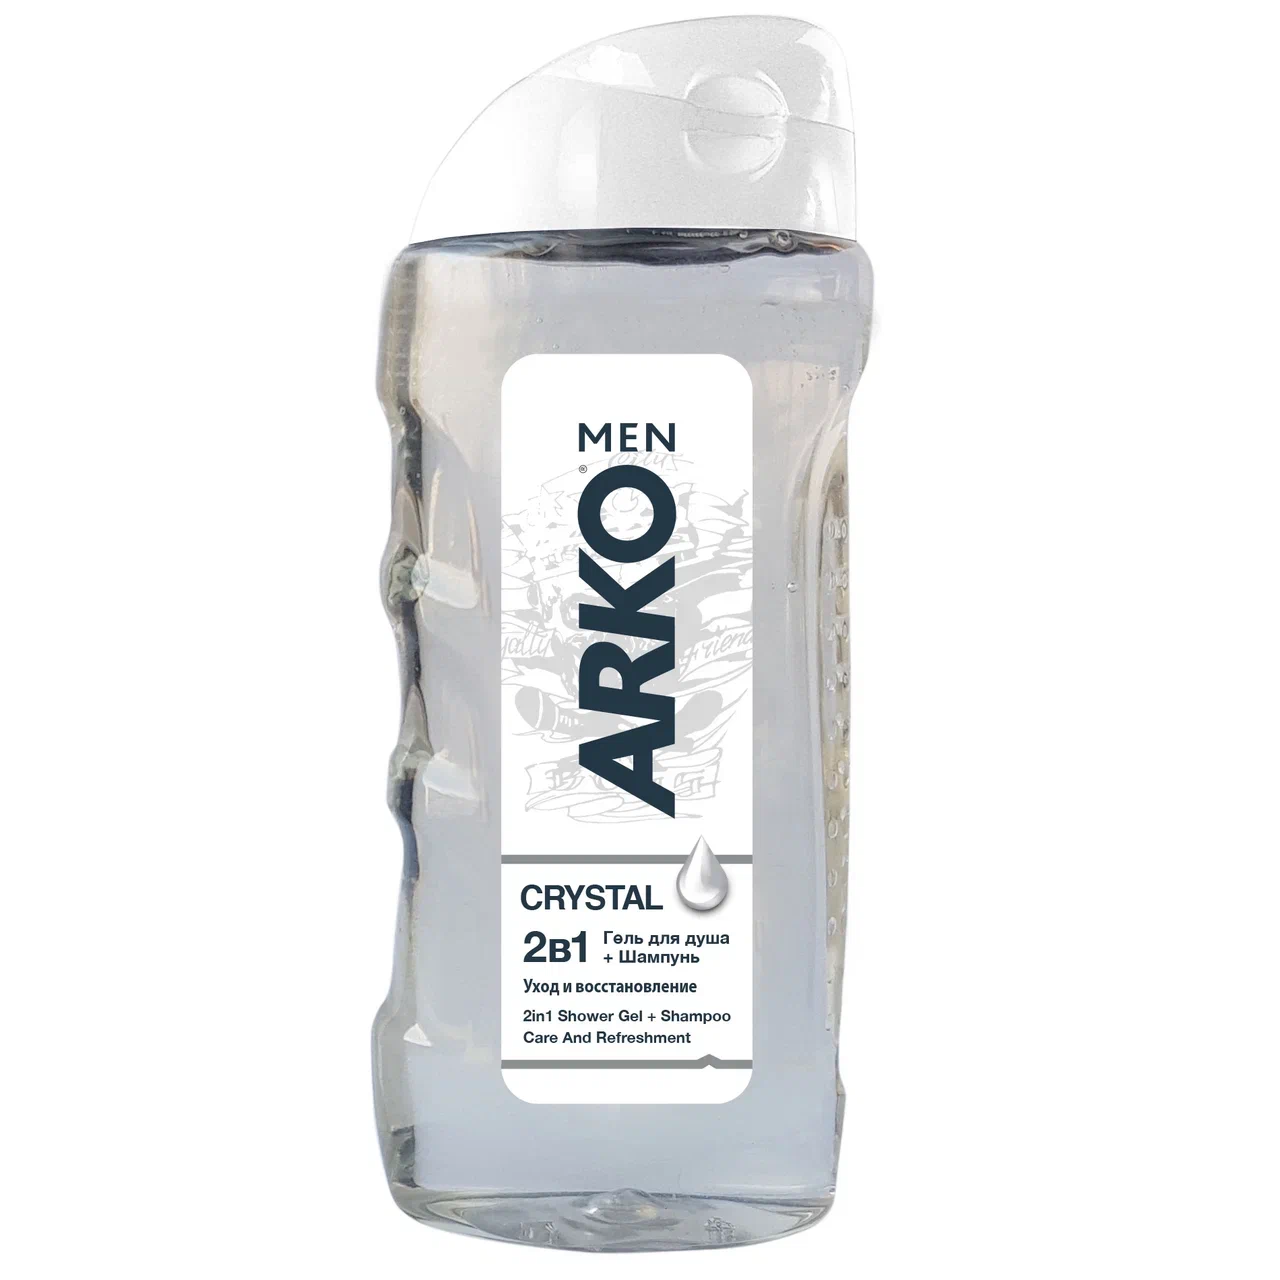 Arko men 2в1 гель для душа + шампунь Crystal 260 мл.